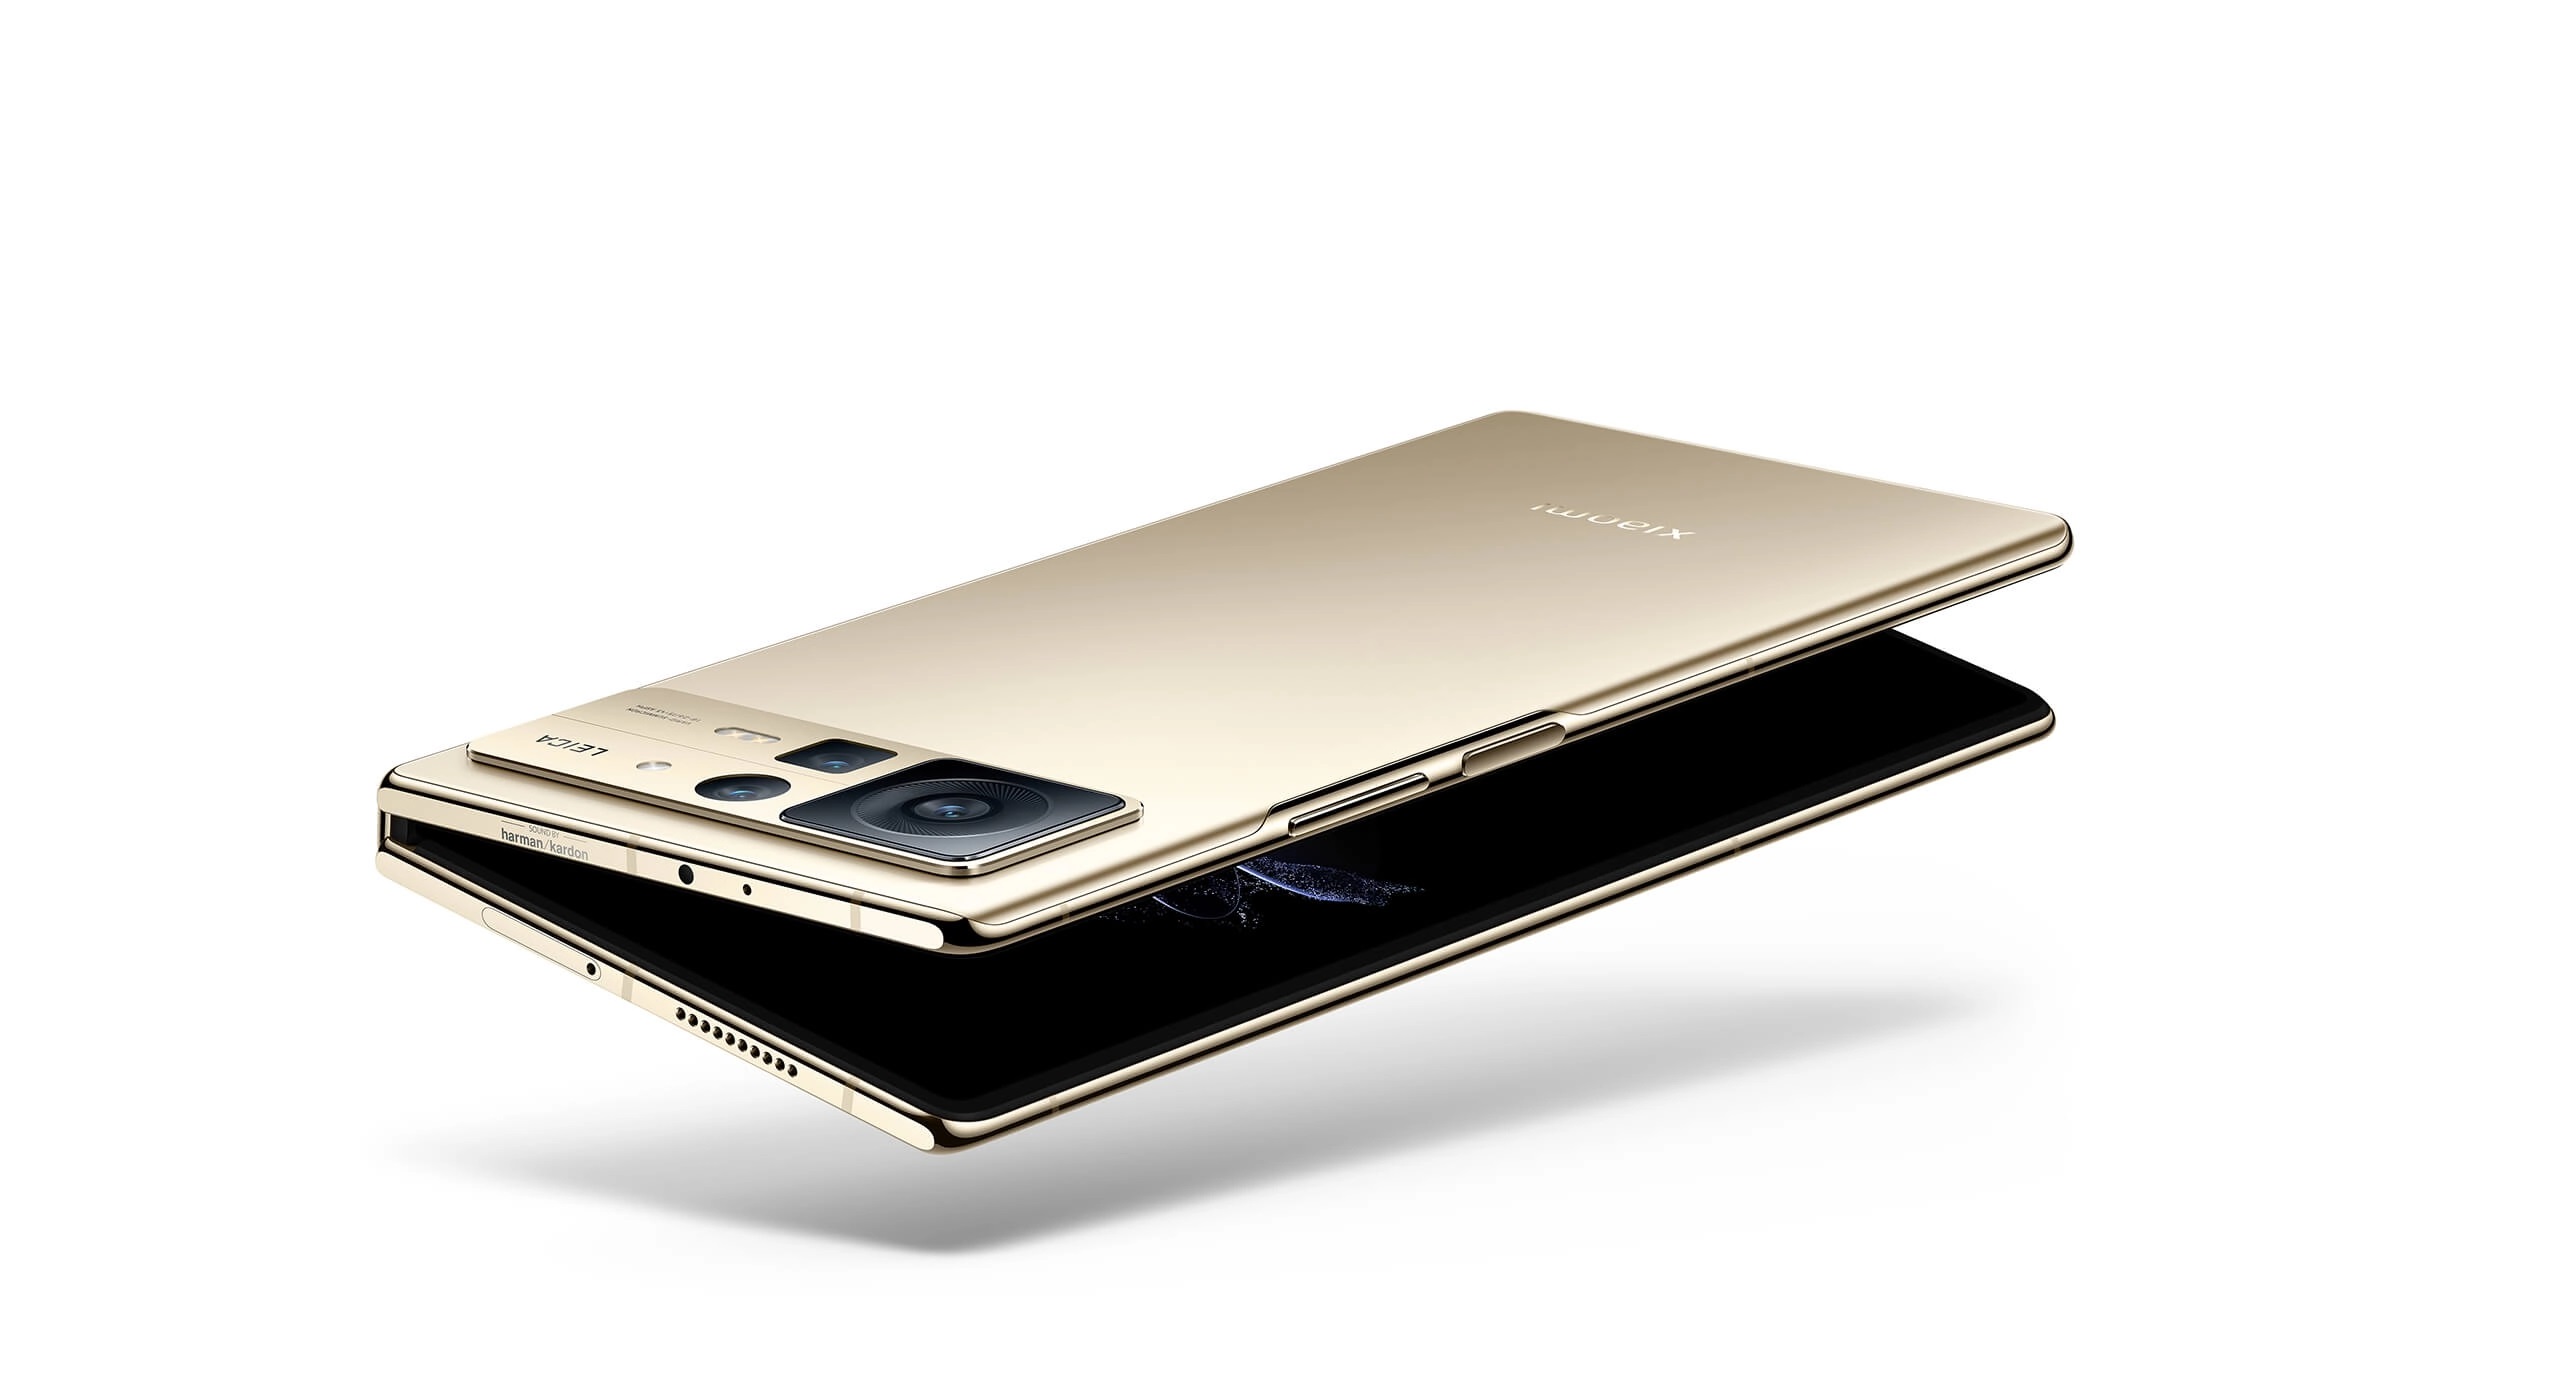 Xiaomi Mix Fold 2 — конкурент Samsung Galaxy Fold4 з рекордно тонким корпусом (5,4 мм у розкладеному стані) за ціною $1300